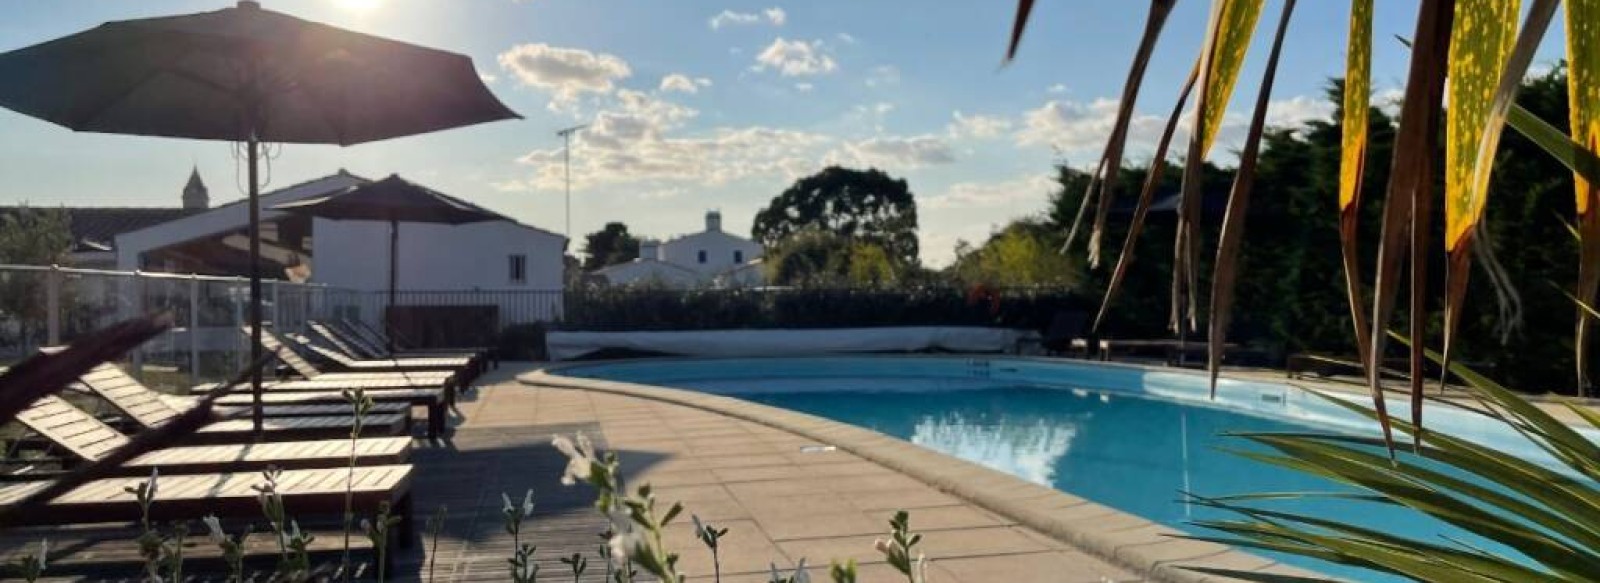 Maison de vacances dans residence avec piscine a Noirmoutier en l'ile